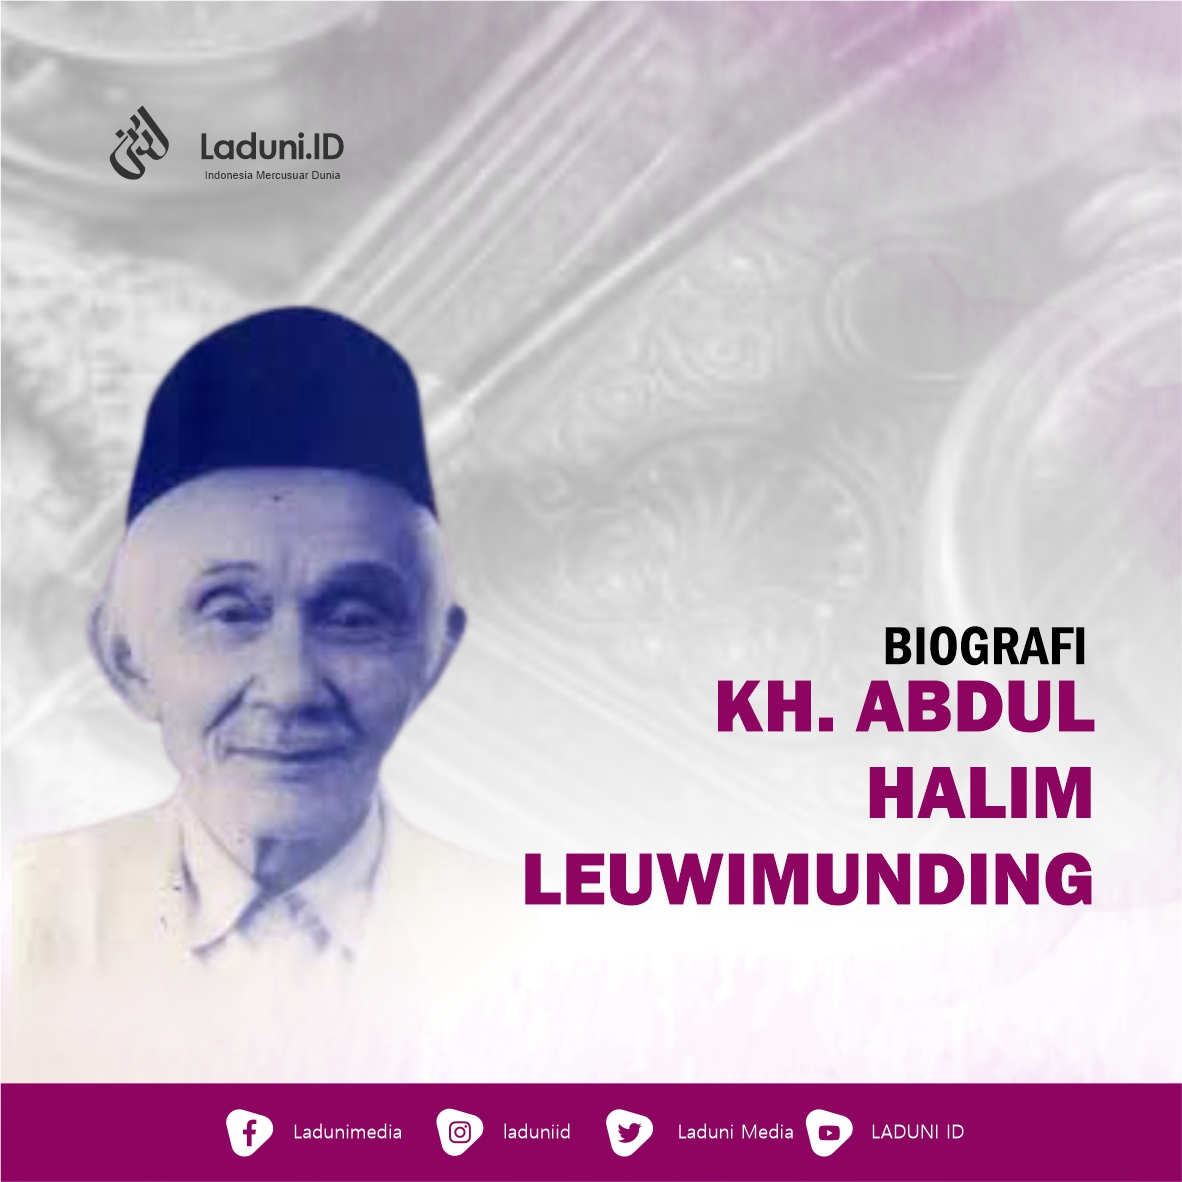 Biografi KH. Abdul Halim Leuwimunding